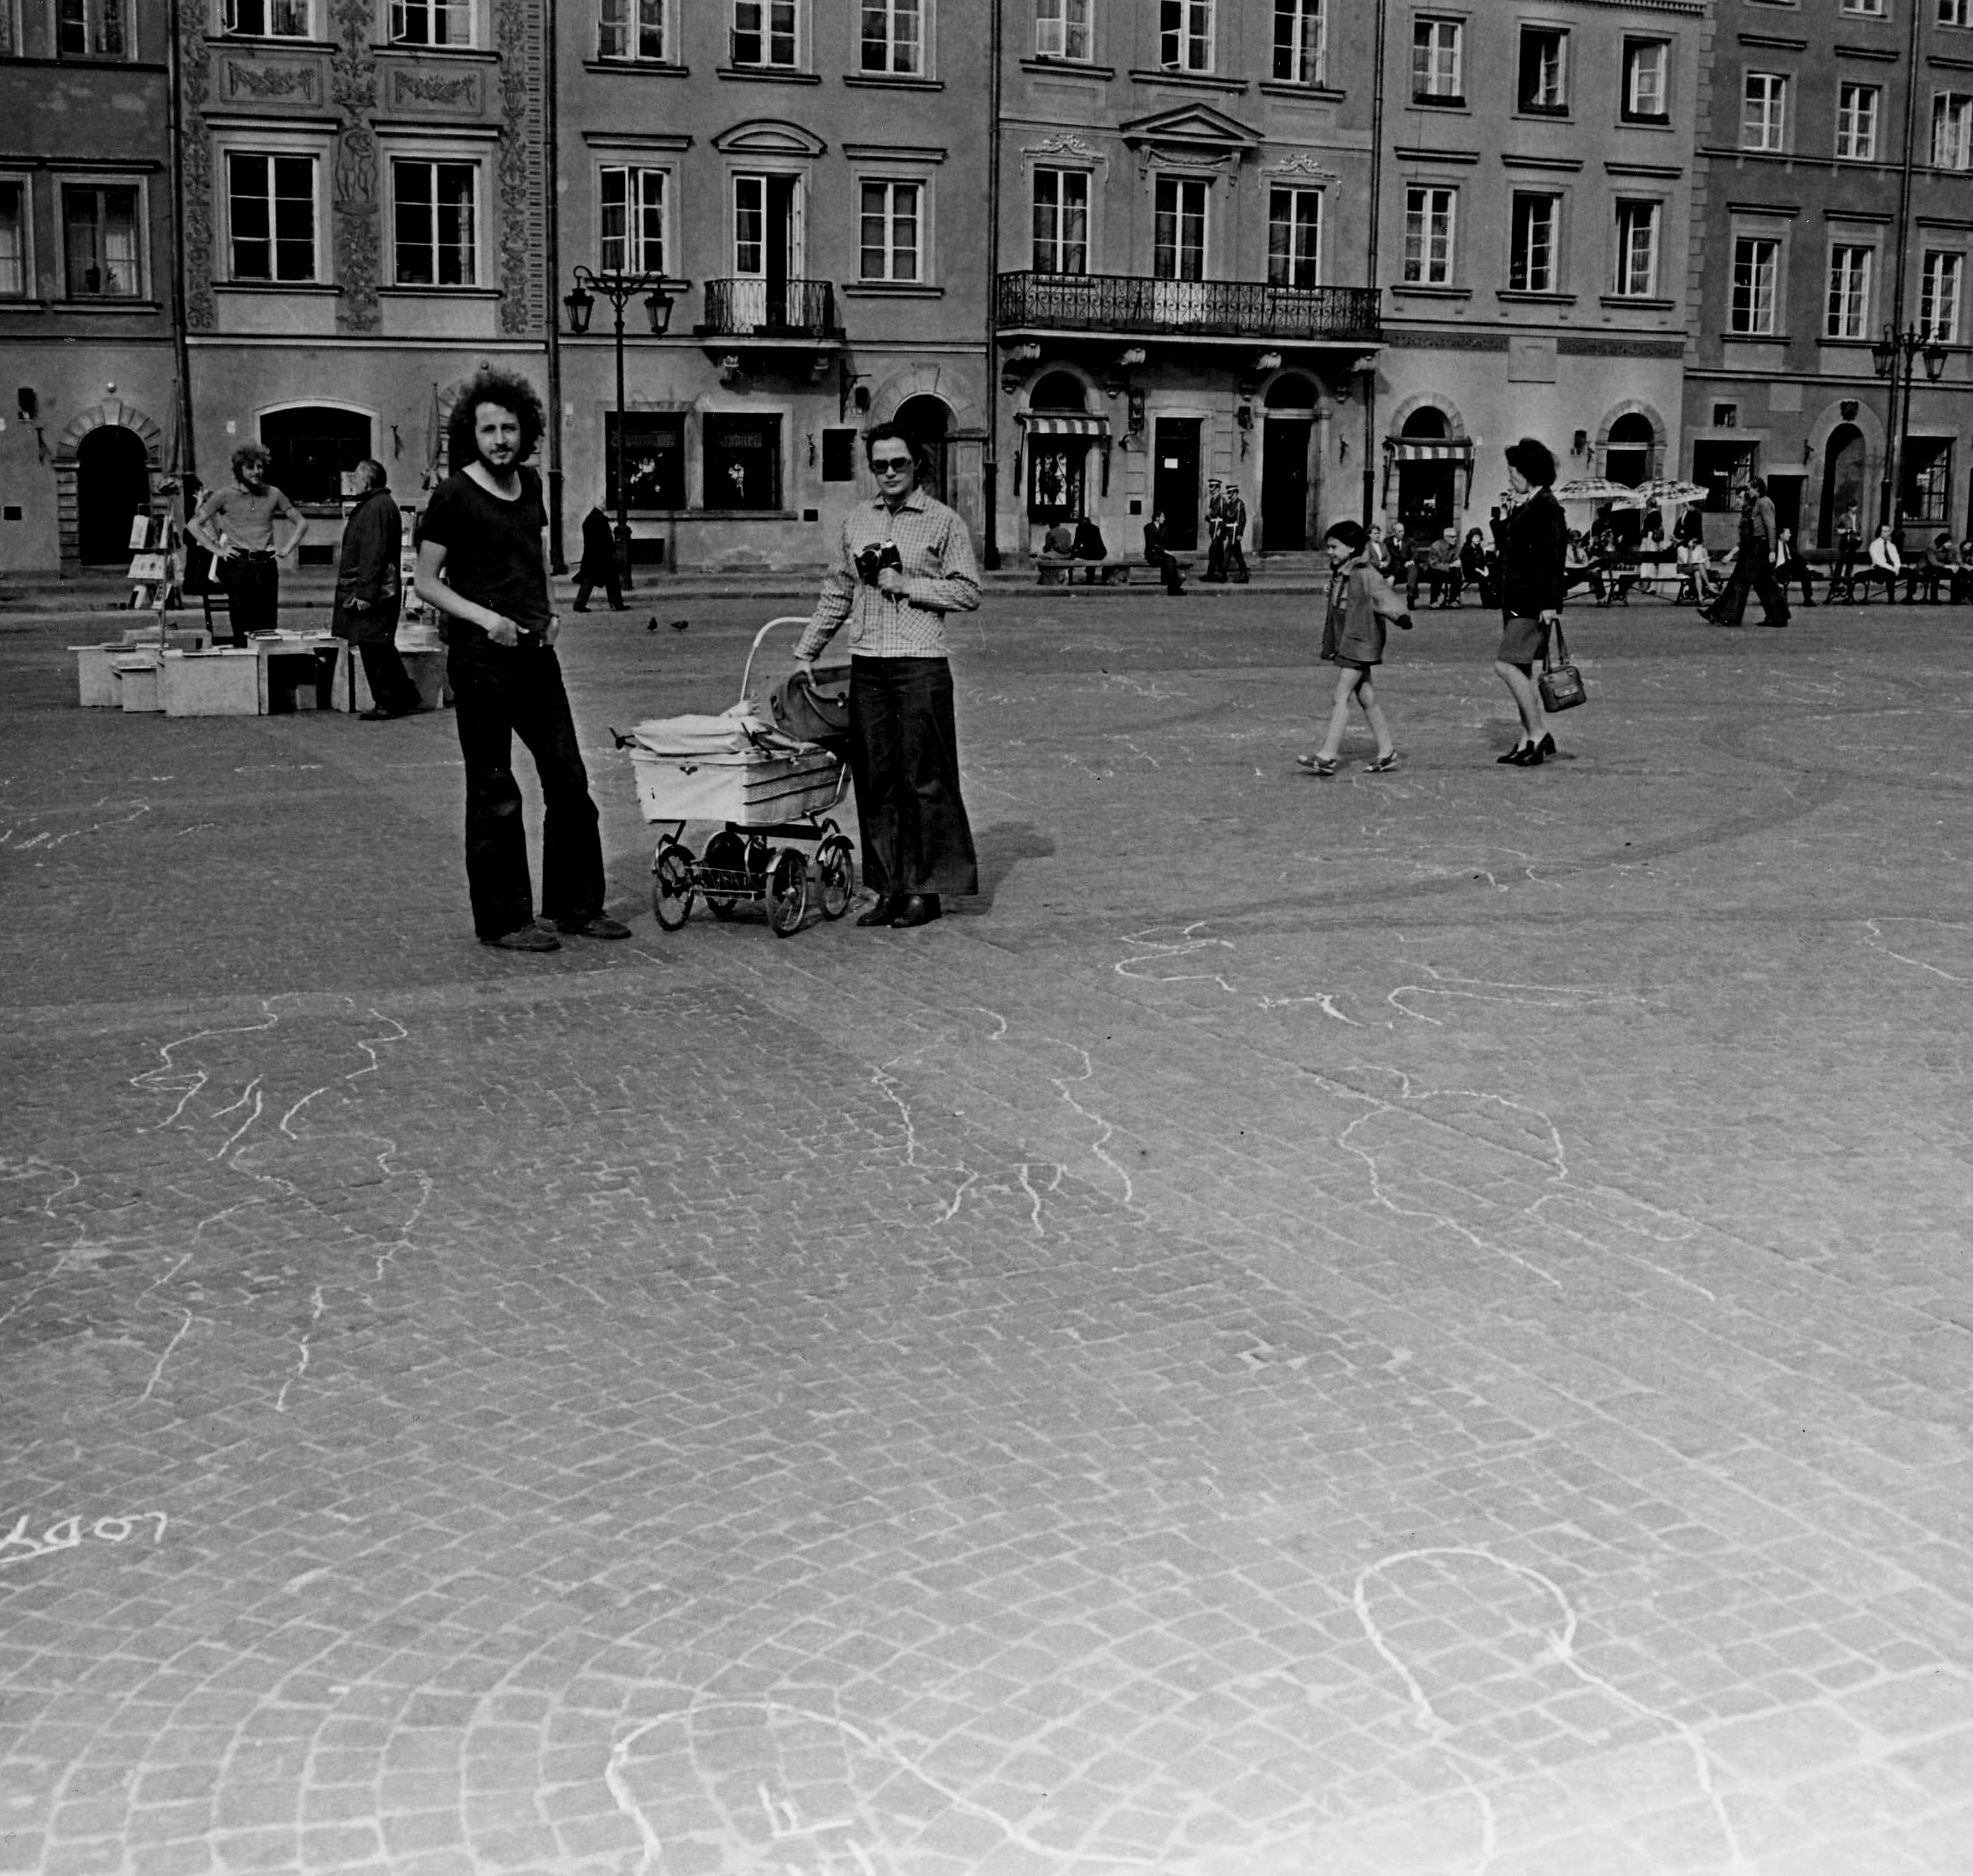 Zygmunt Piotrowski and Ryszard Kryska action 'Obrys postaci jako znak czasu' at the Warsaw's Old Town Square, 1974. Photo by Przemysław Kwiek.